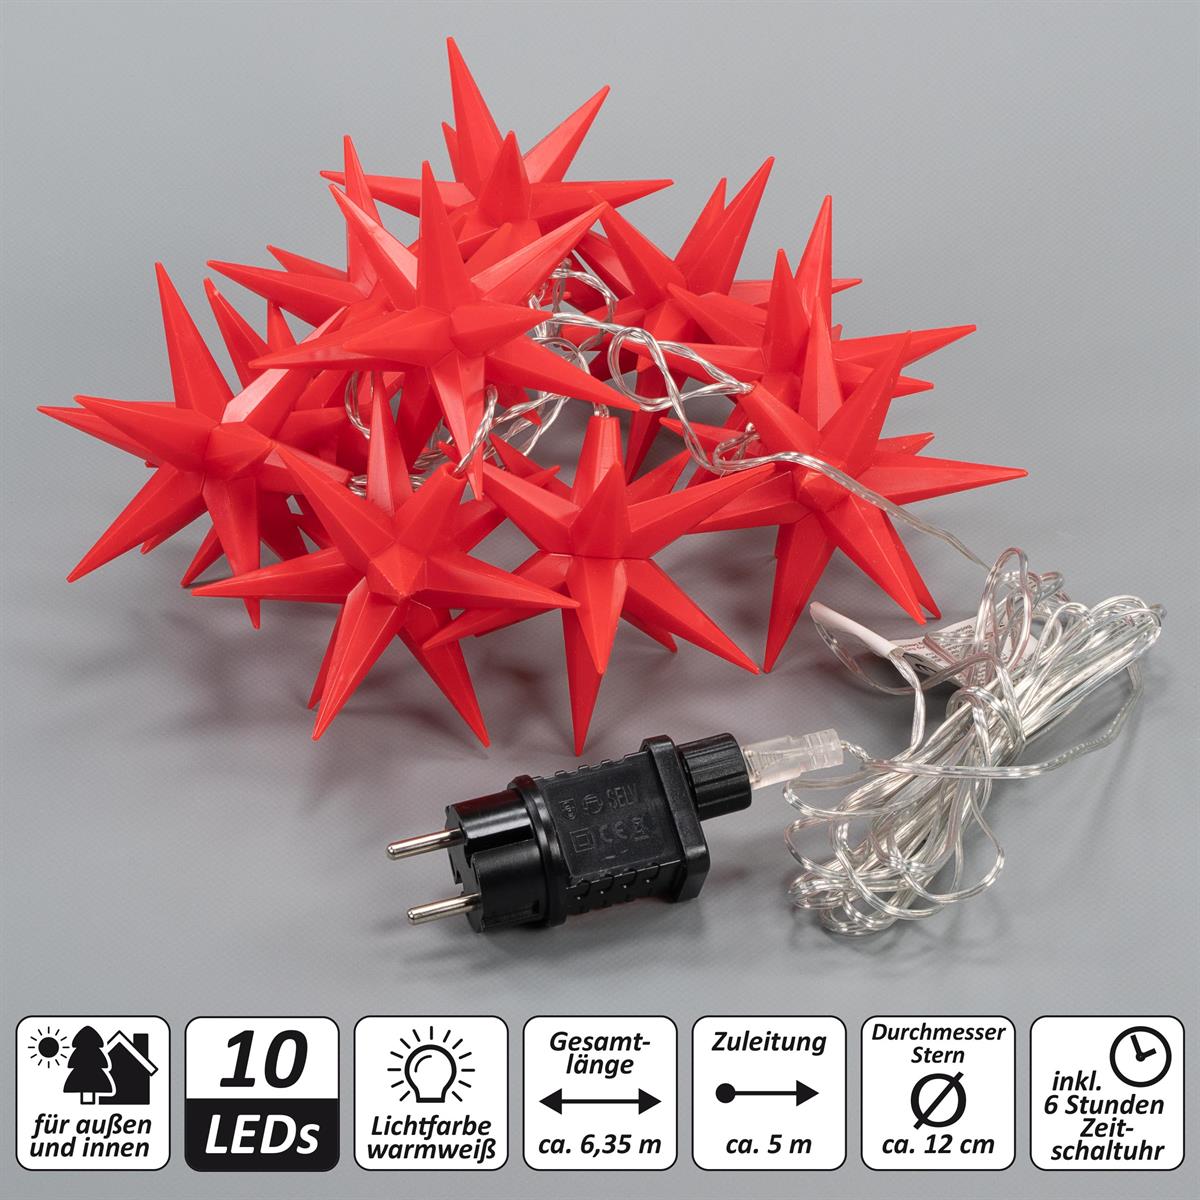 Weihnachts-Sterne Timer rot Xmas Trafo Lichterkette Weihnachts-Deko 10 LED